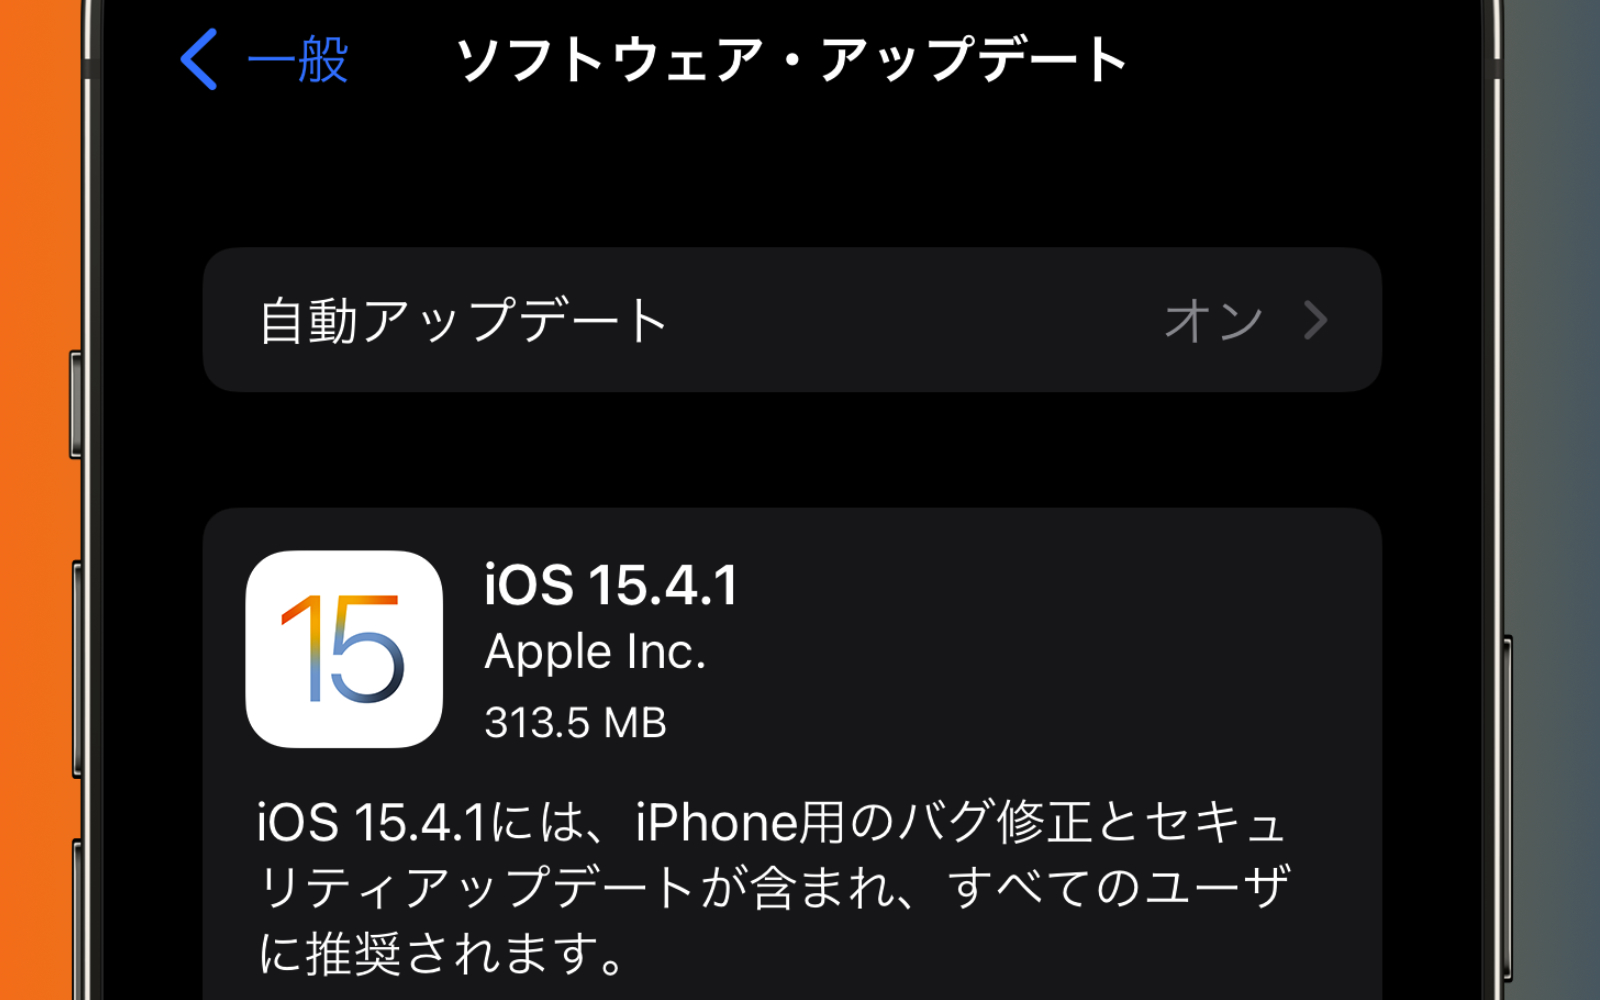 IOS15 4 1 update